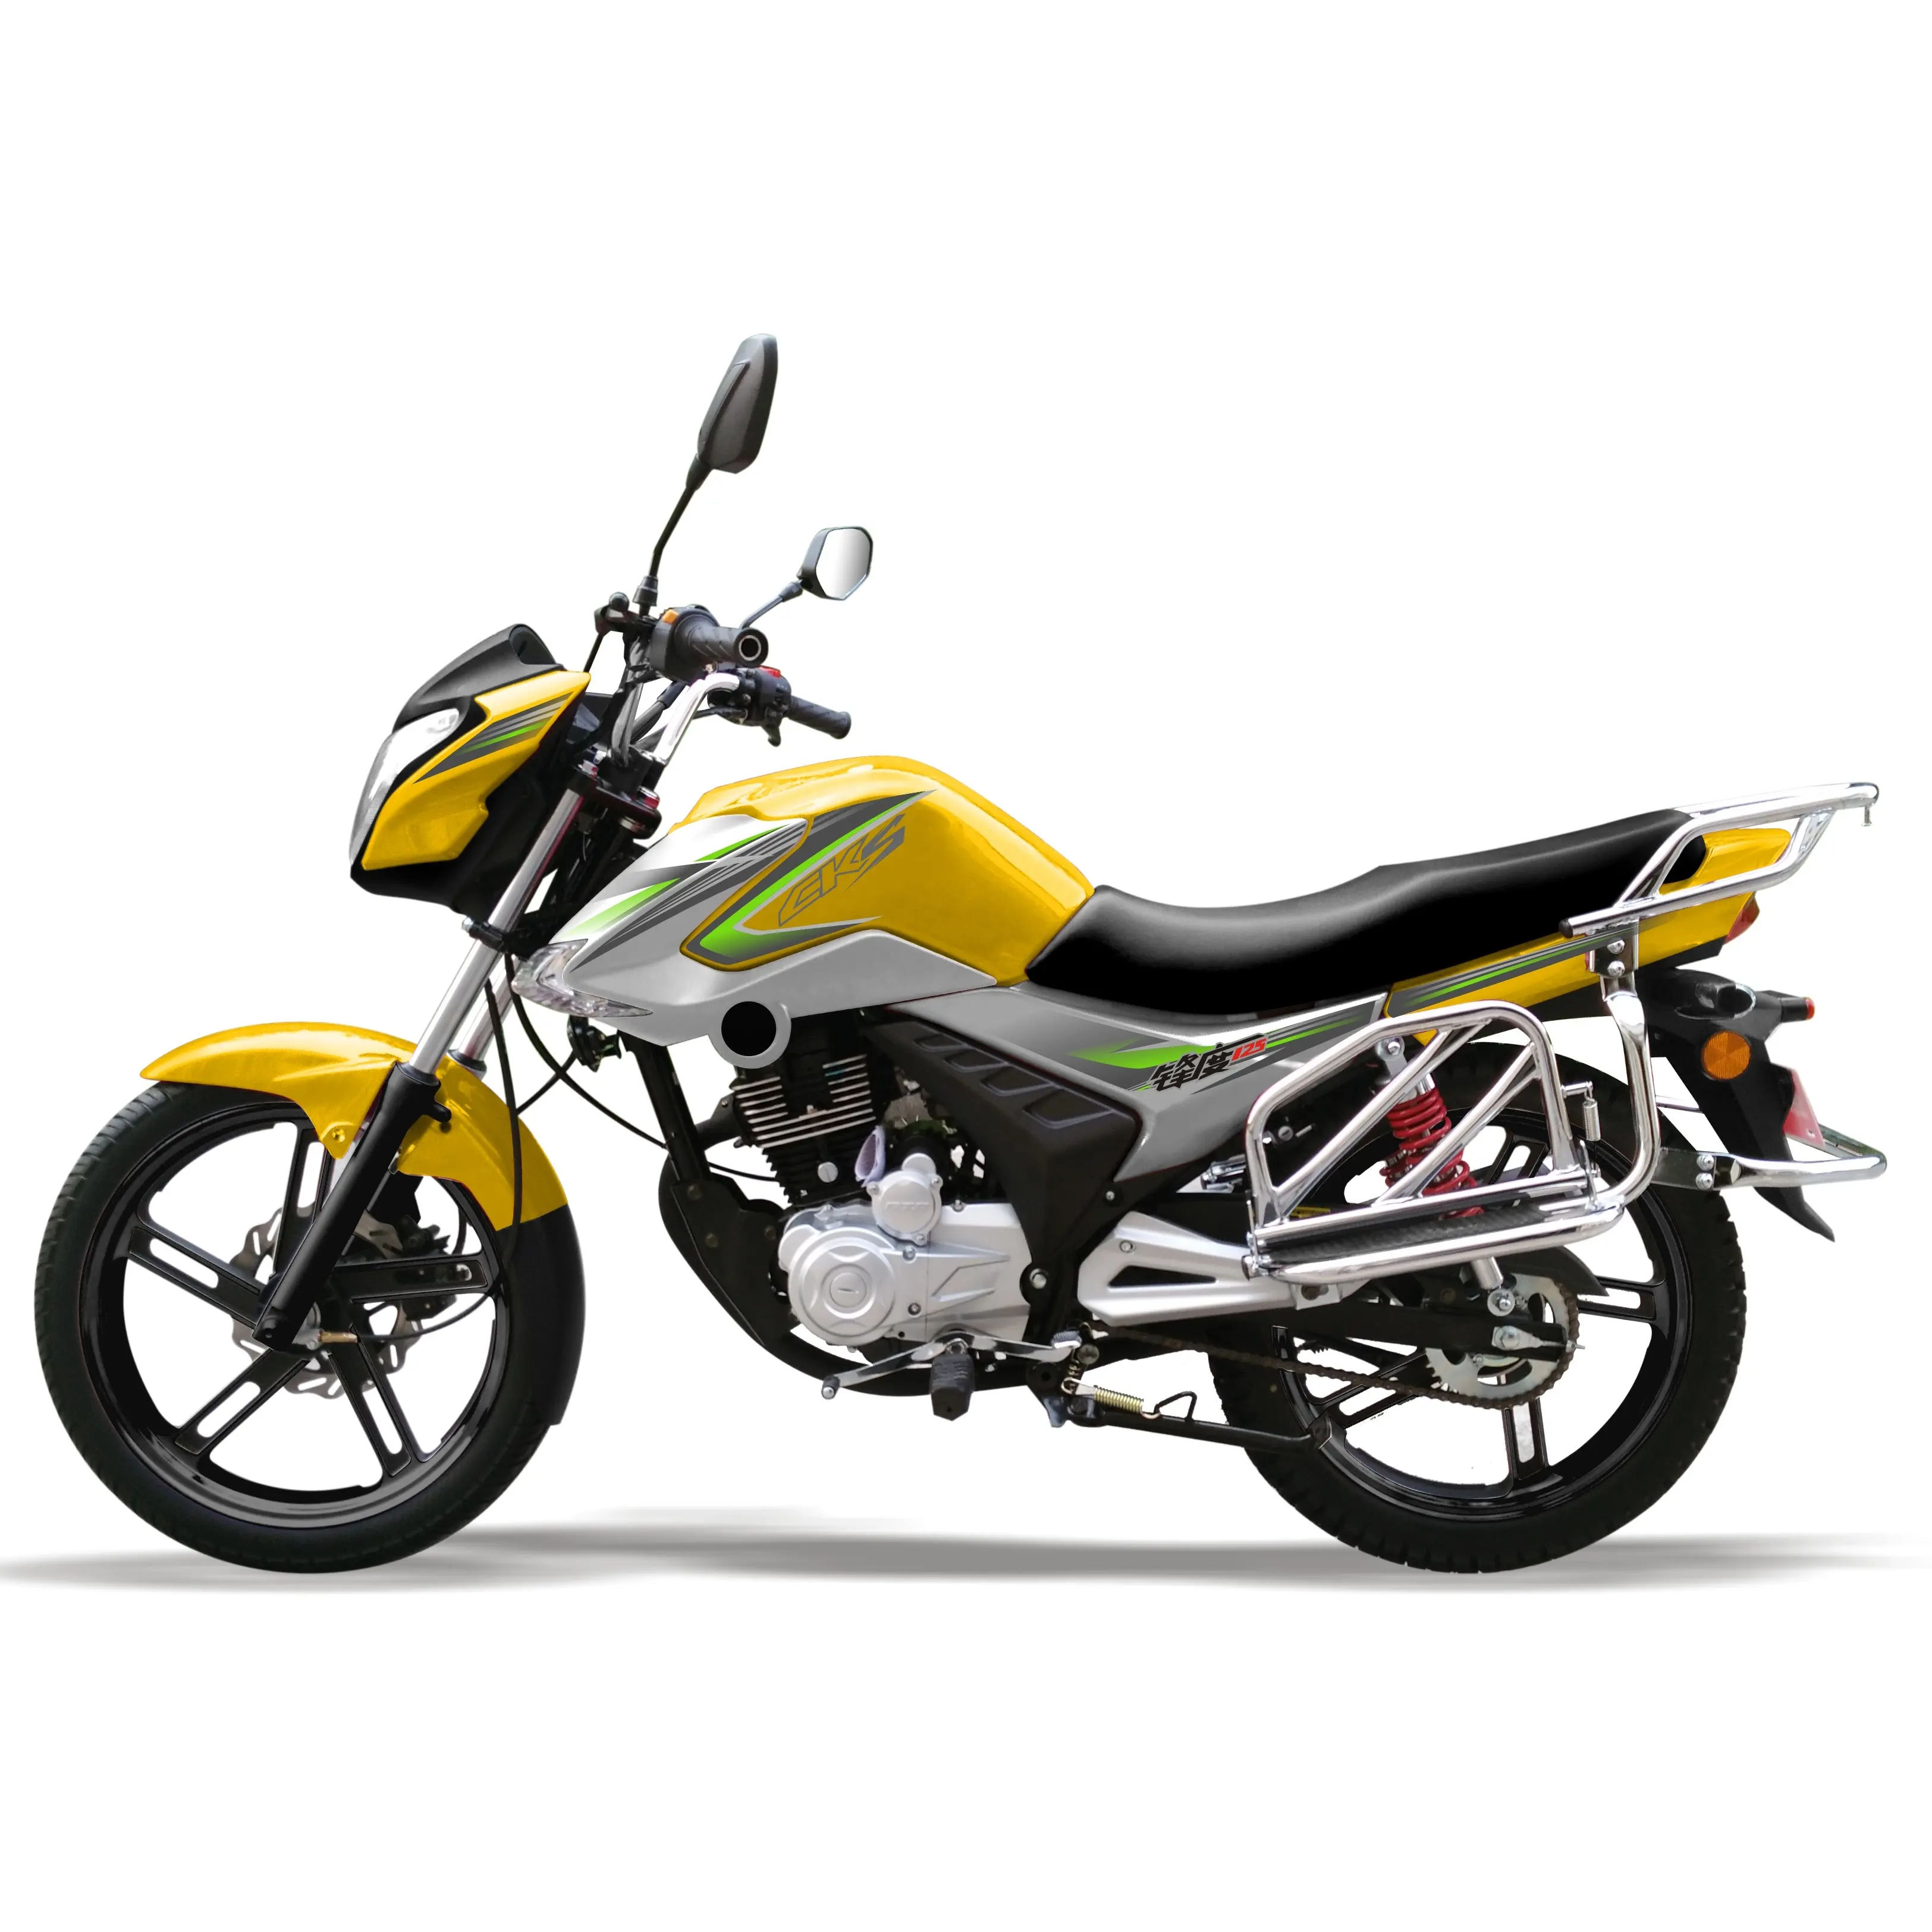 מכירה לוהטת אופנוע 125cc 150cc טוב עיצוב חדש עיצוב אופנוע הסיני זול מחיר אופנוע יפני דגם עיצוב